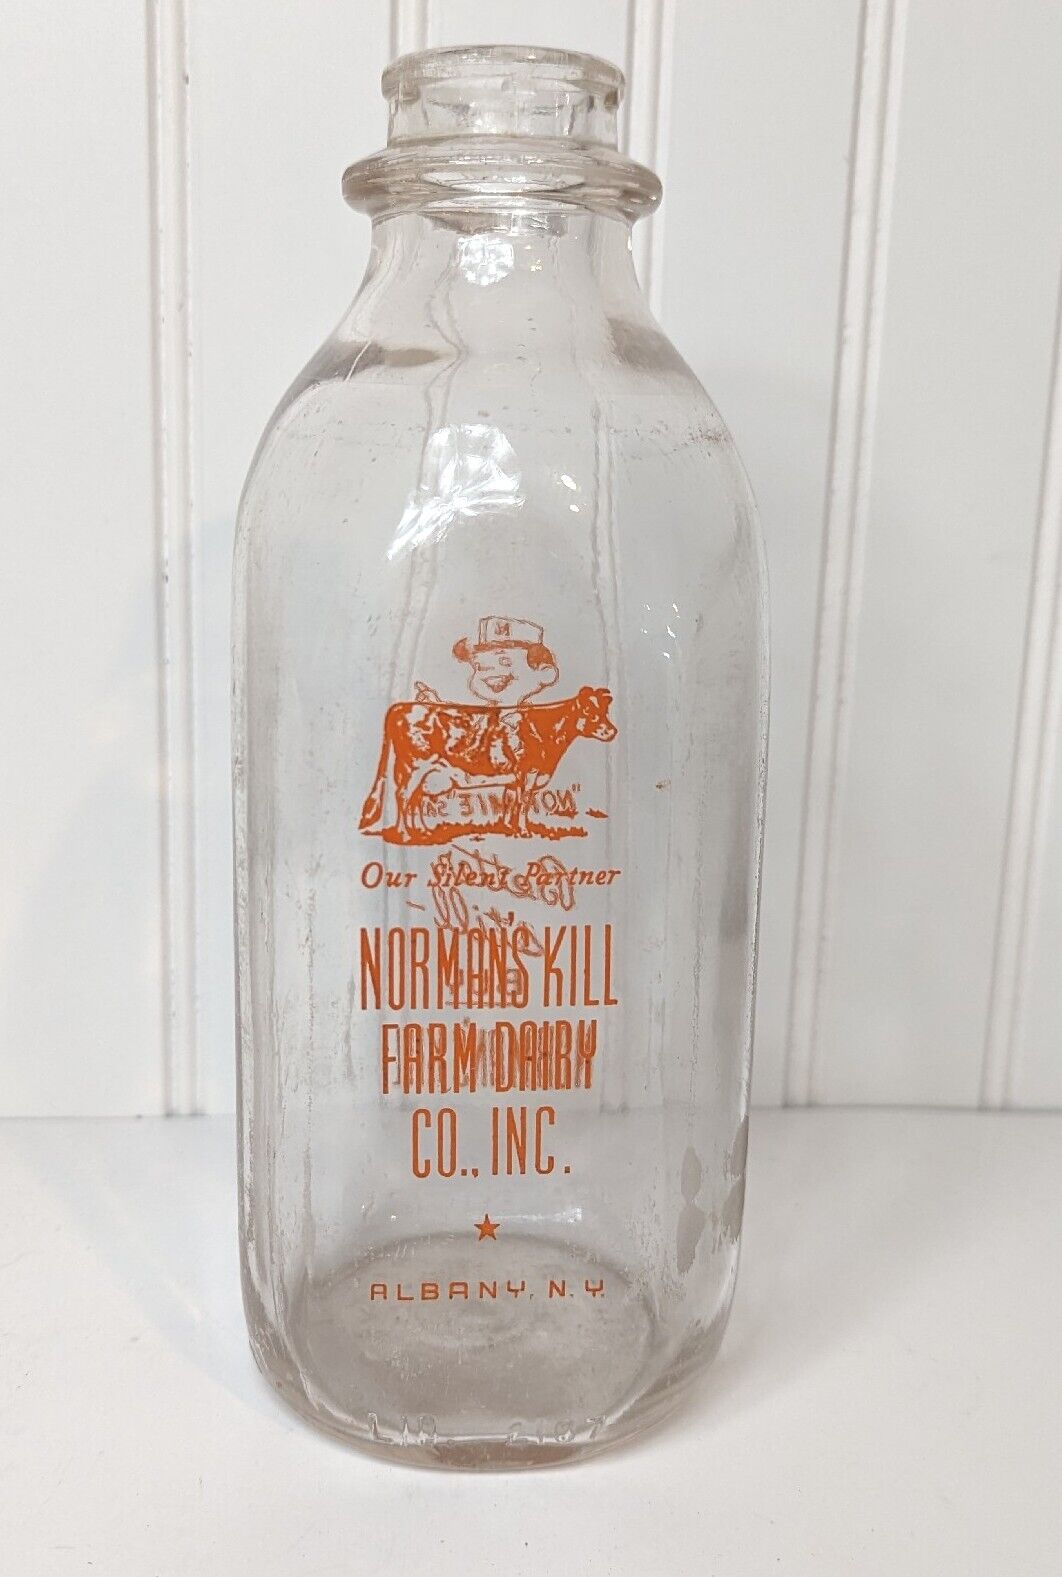 SSPQ Milk Bottle Norman's Kill Norman's Kill Farm Dairy Albany NY VG Condition 